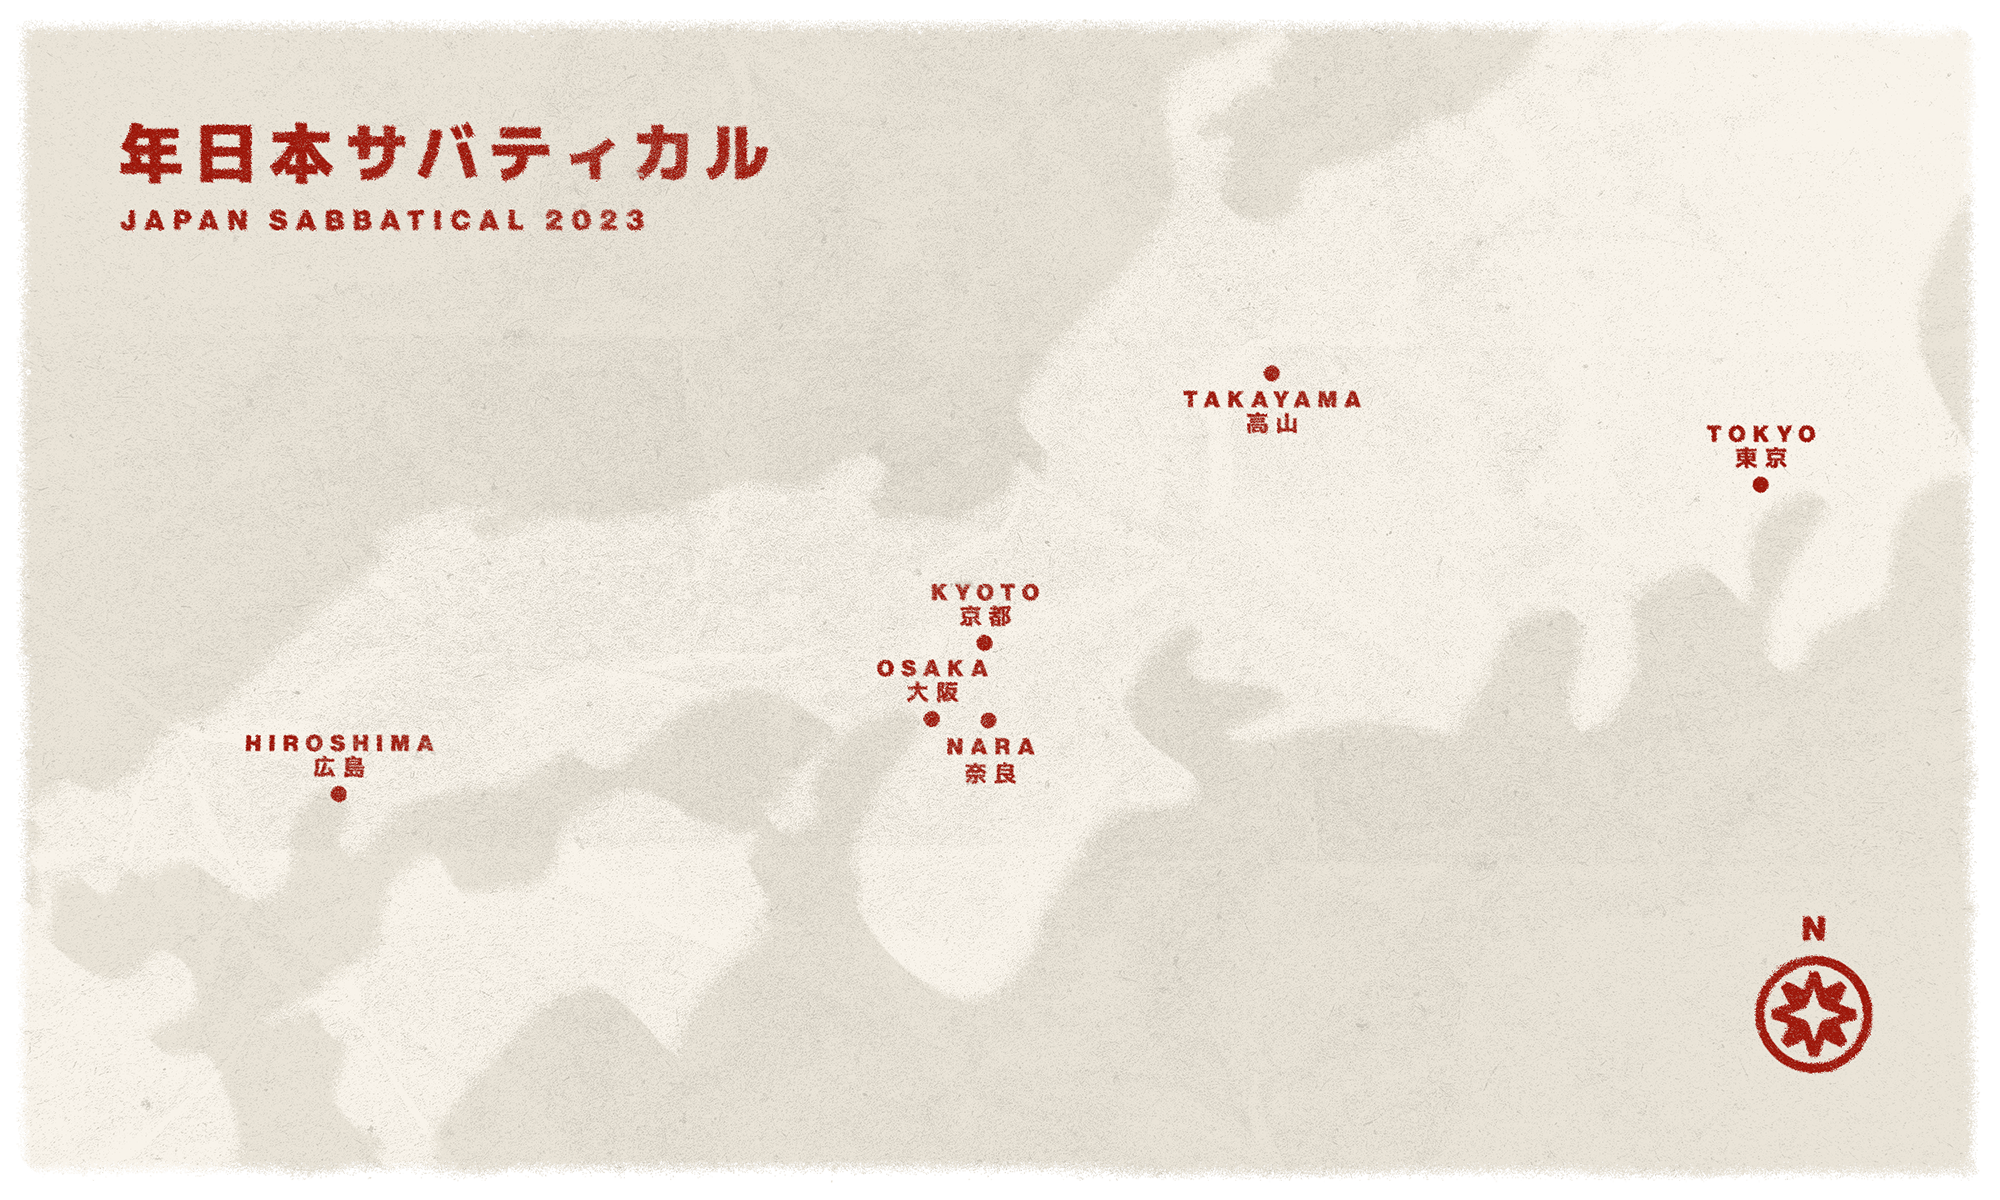 Map of cities visited in Parker's Japan Sabbatical in 2023. Cities include Tokyo, Takayama, Kyoto, Hiroshima, Nara and Osaka.